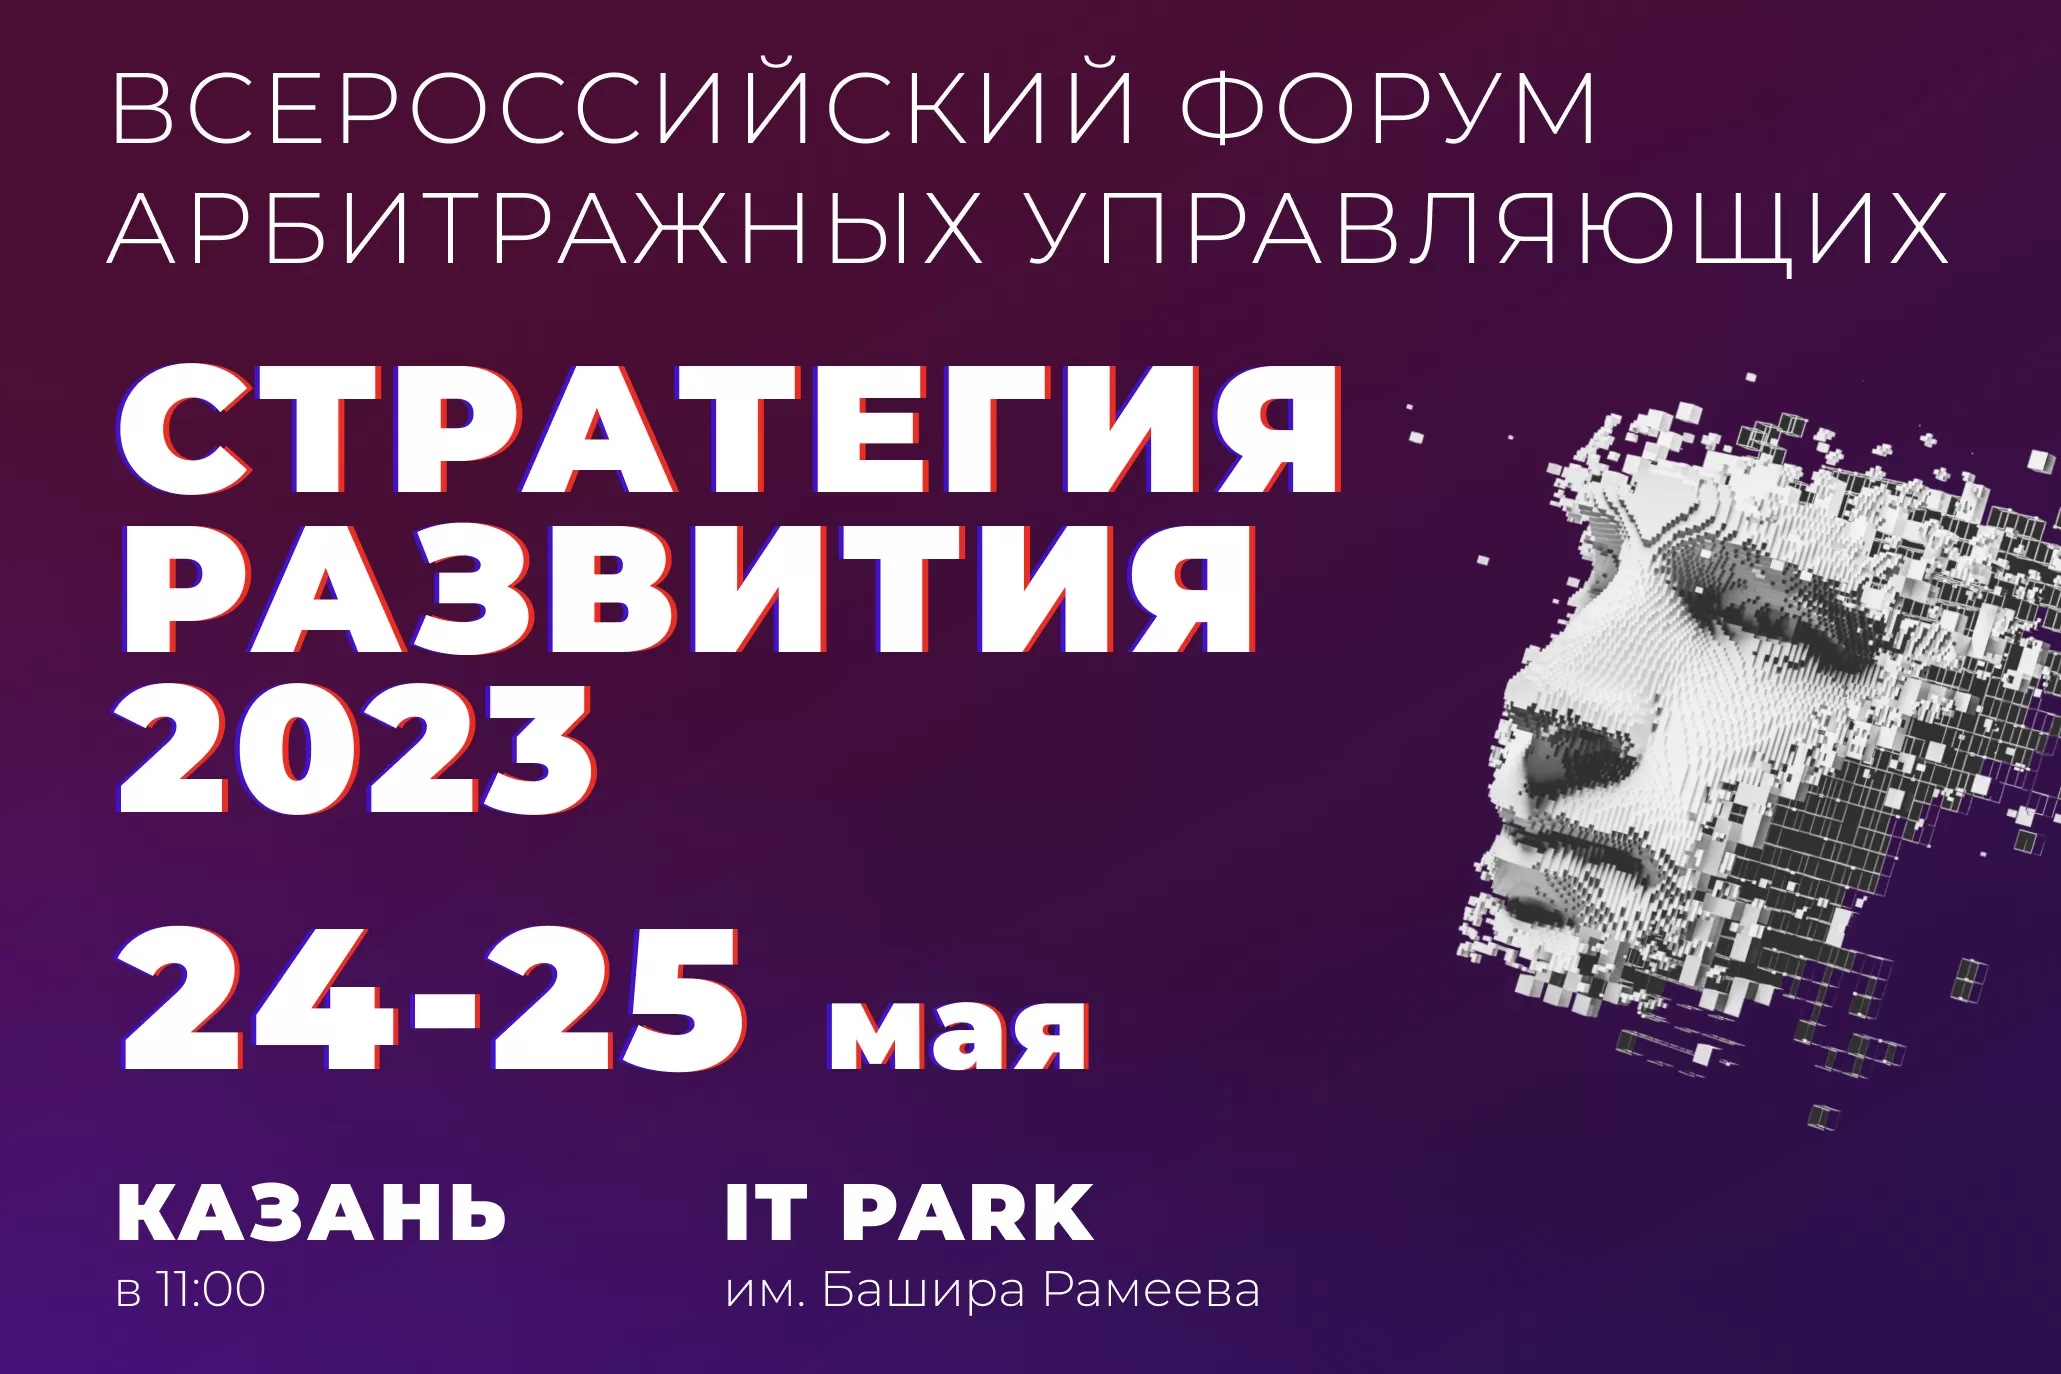 Всероссийский форум арбитражных управляющих «СТРАТЕГИЯ РАЗВИТИЯ 2023»